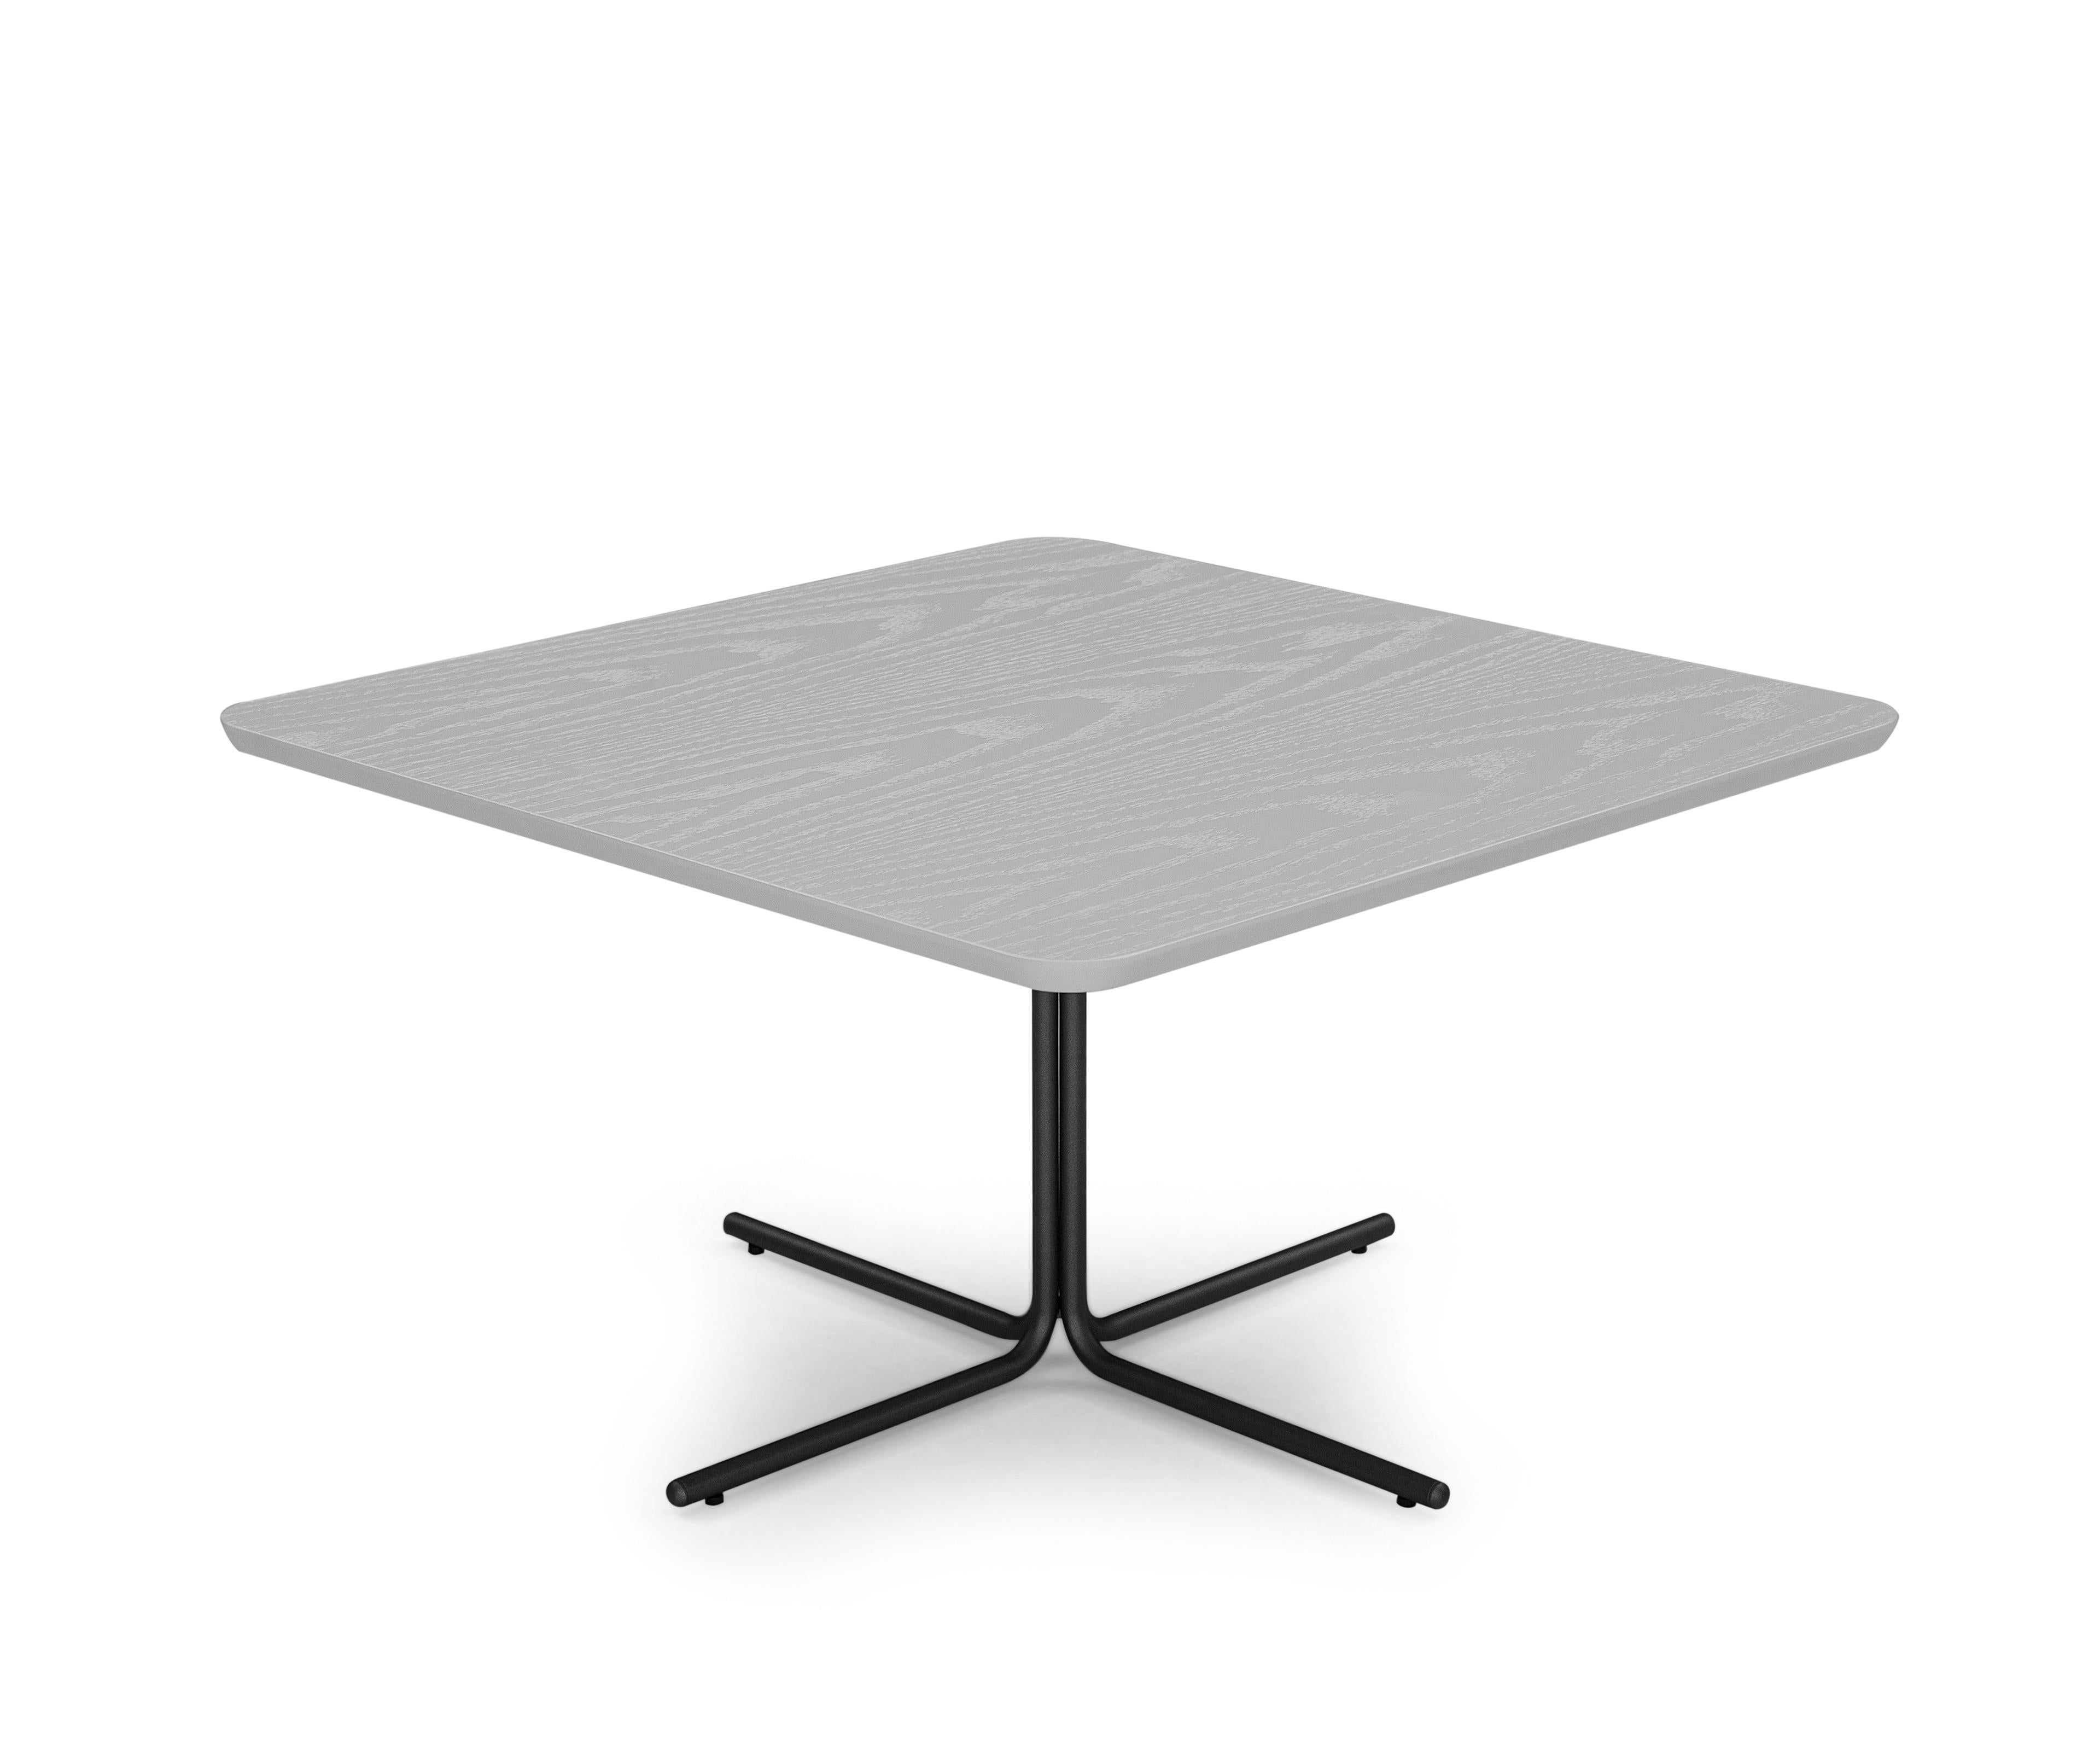 Unterstützung Tabellen auf der Grundlage von Aluminium und Top in MDF 20mm. Es ist der perfekte Hauch von Leichtigkeit für Ihr Zuhause. Wird auch als Set verkauft.